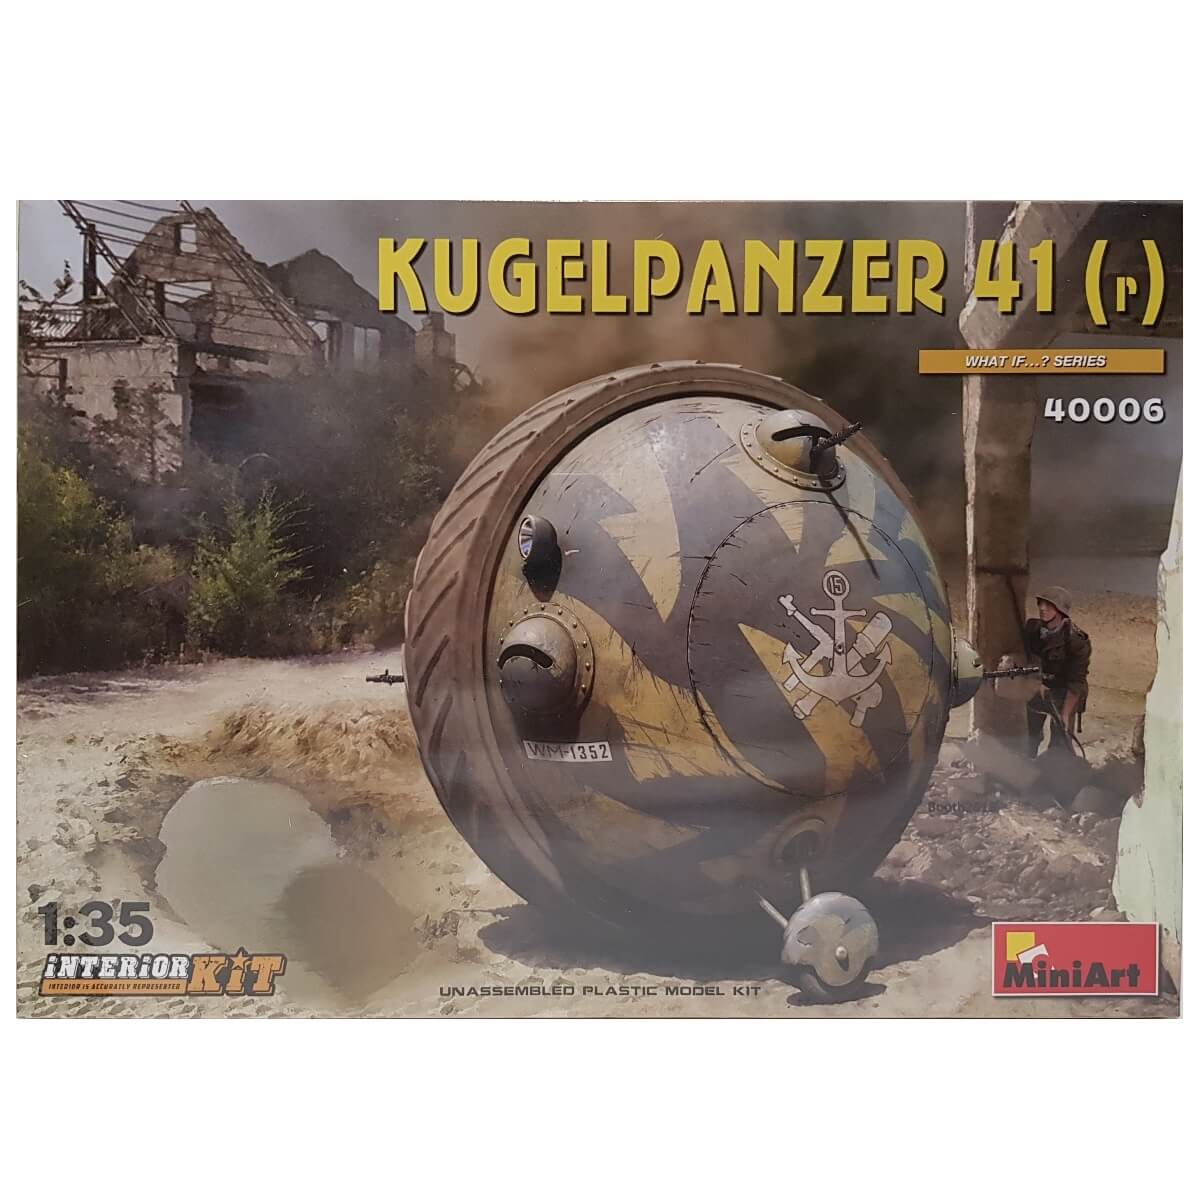 1:35 Kugelpanzer 41(r) Interior Kit - MINIART